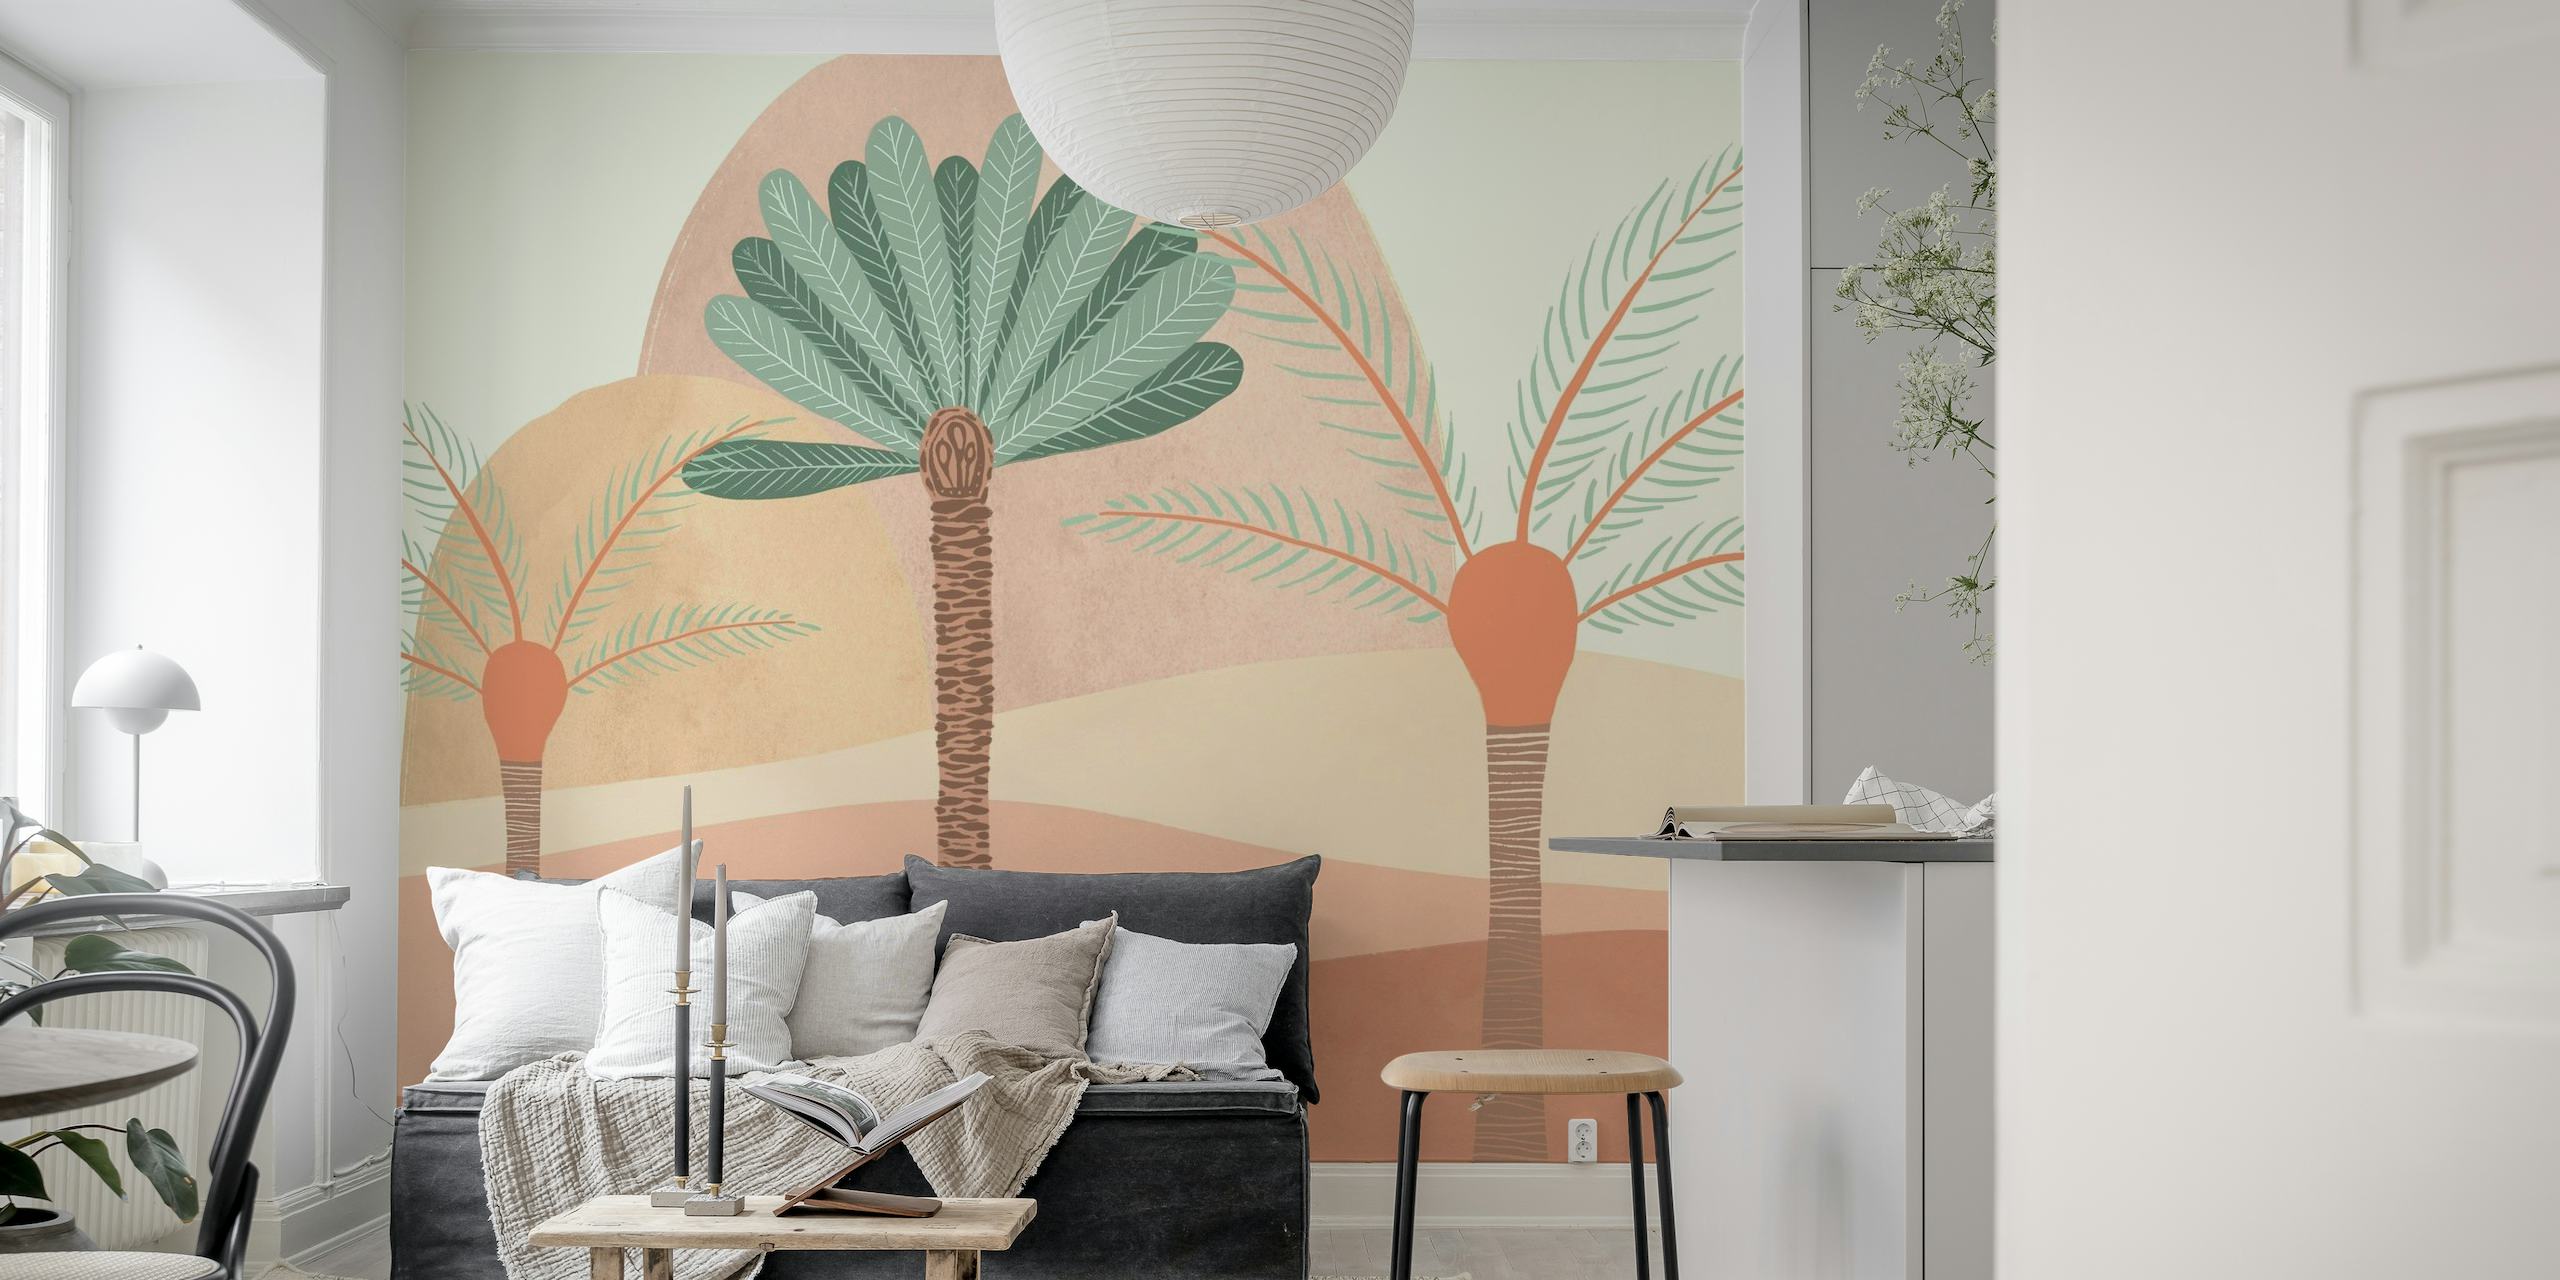 Ruhiges Wüstenwandbild „Peachy Sands“ mit stilisierter Flora in sanften Pfirsich- und Sandtönen.